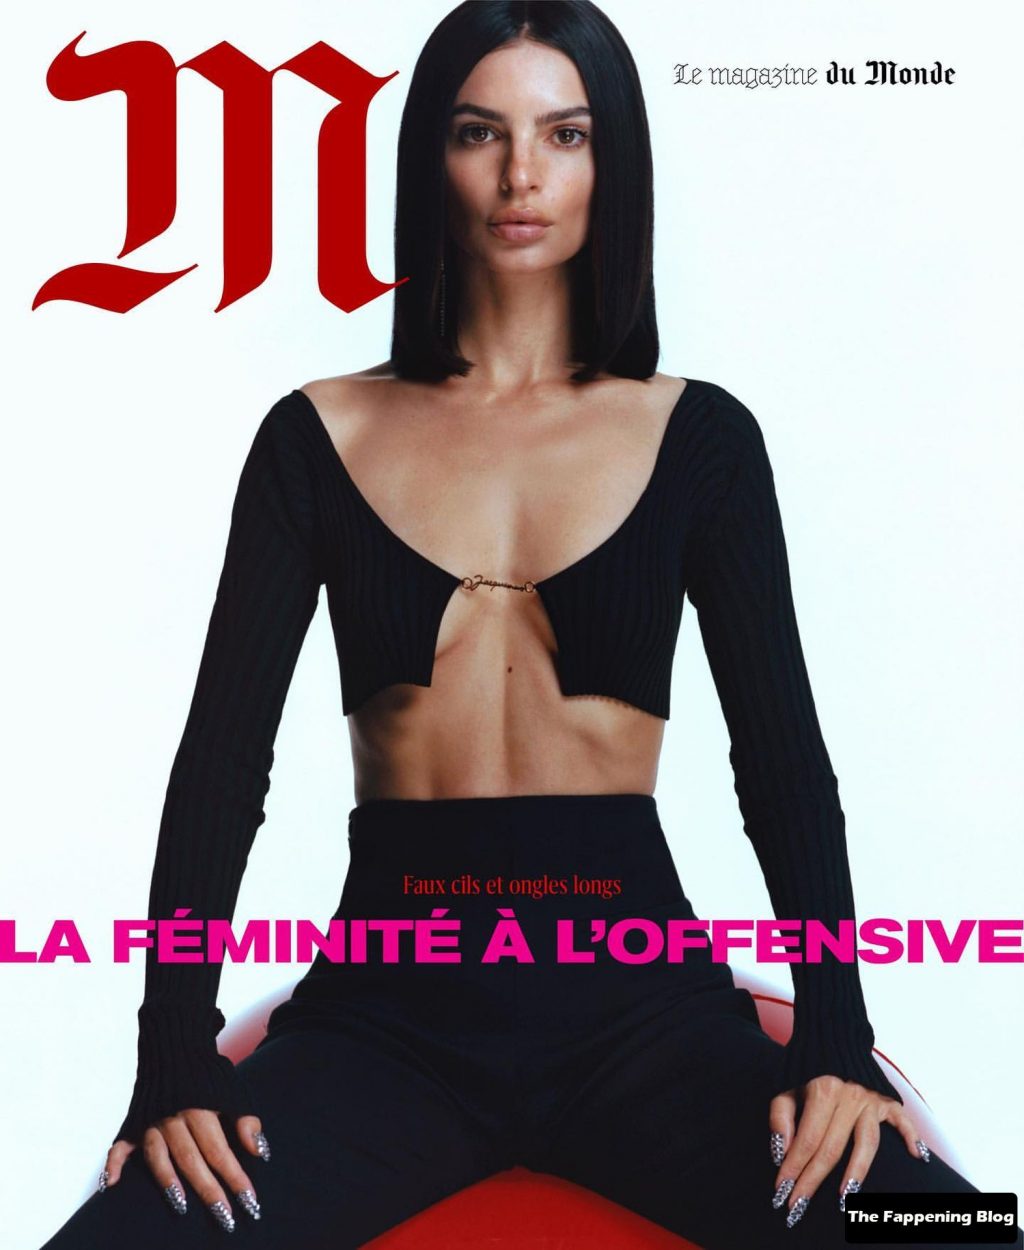 Emily Ratajkowski Displays Her Tits For M, Le Magazine Du Monde (15 Photos)